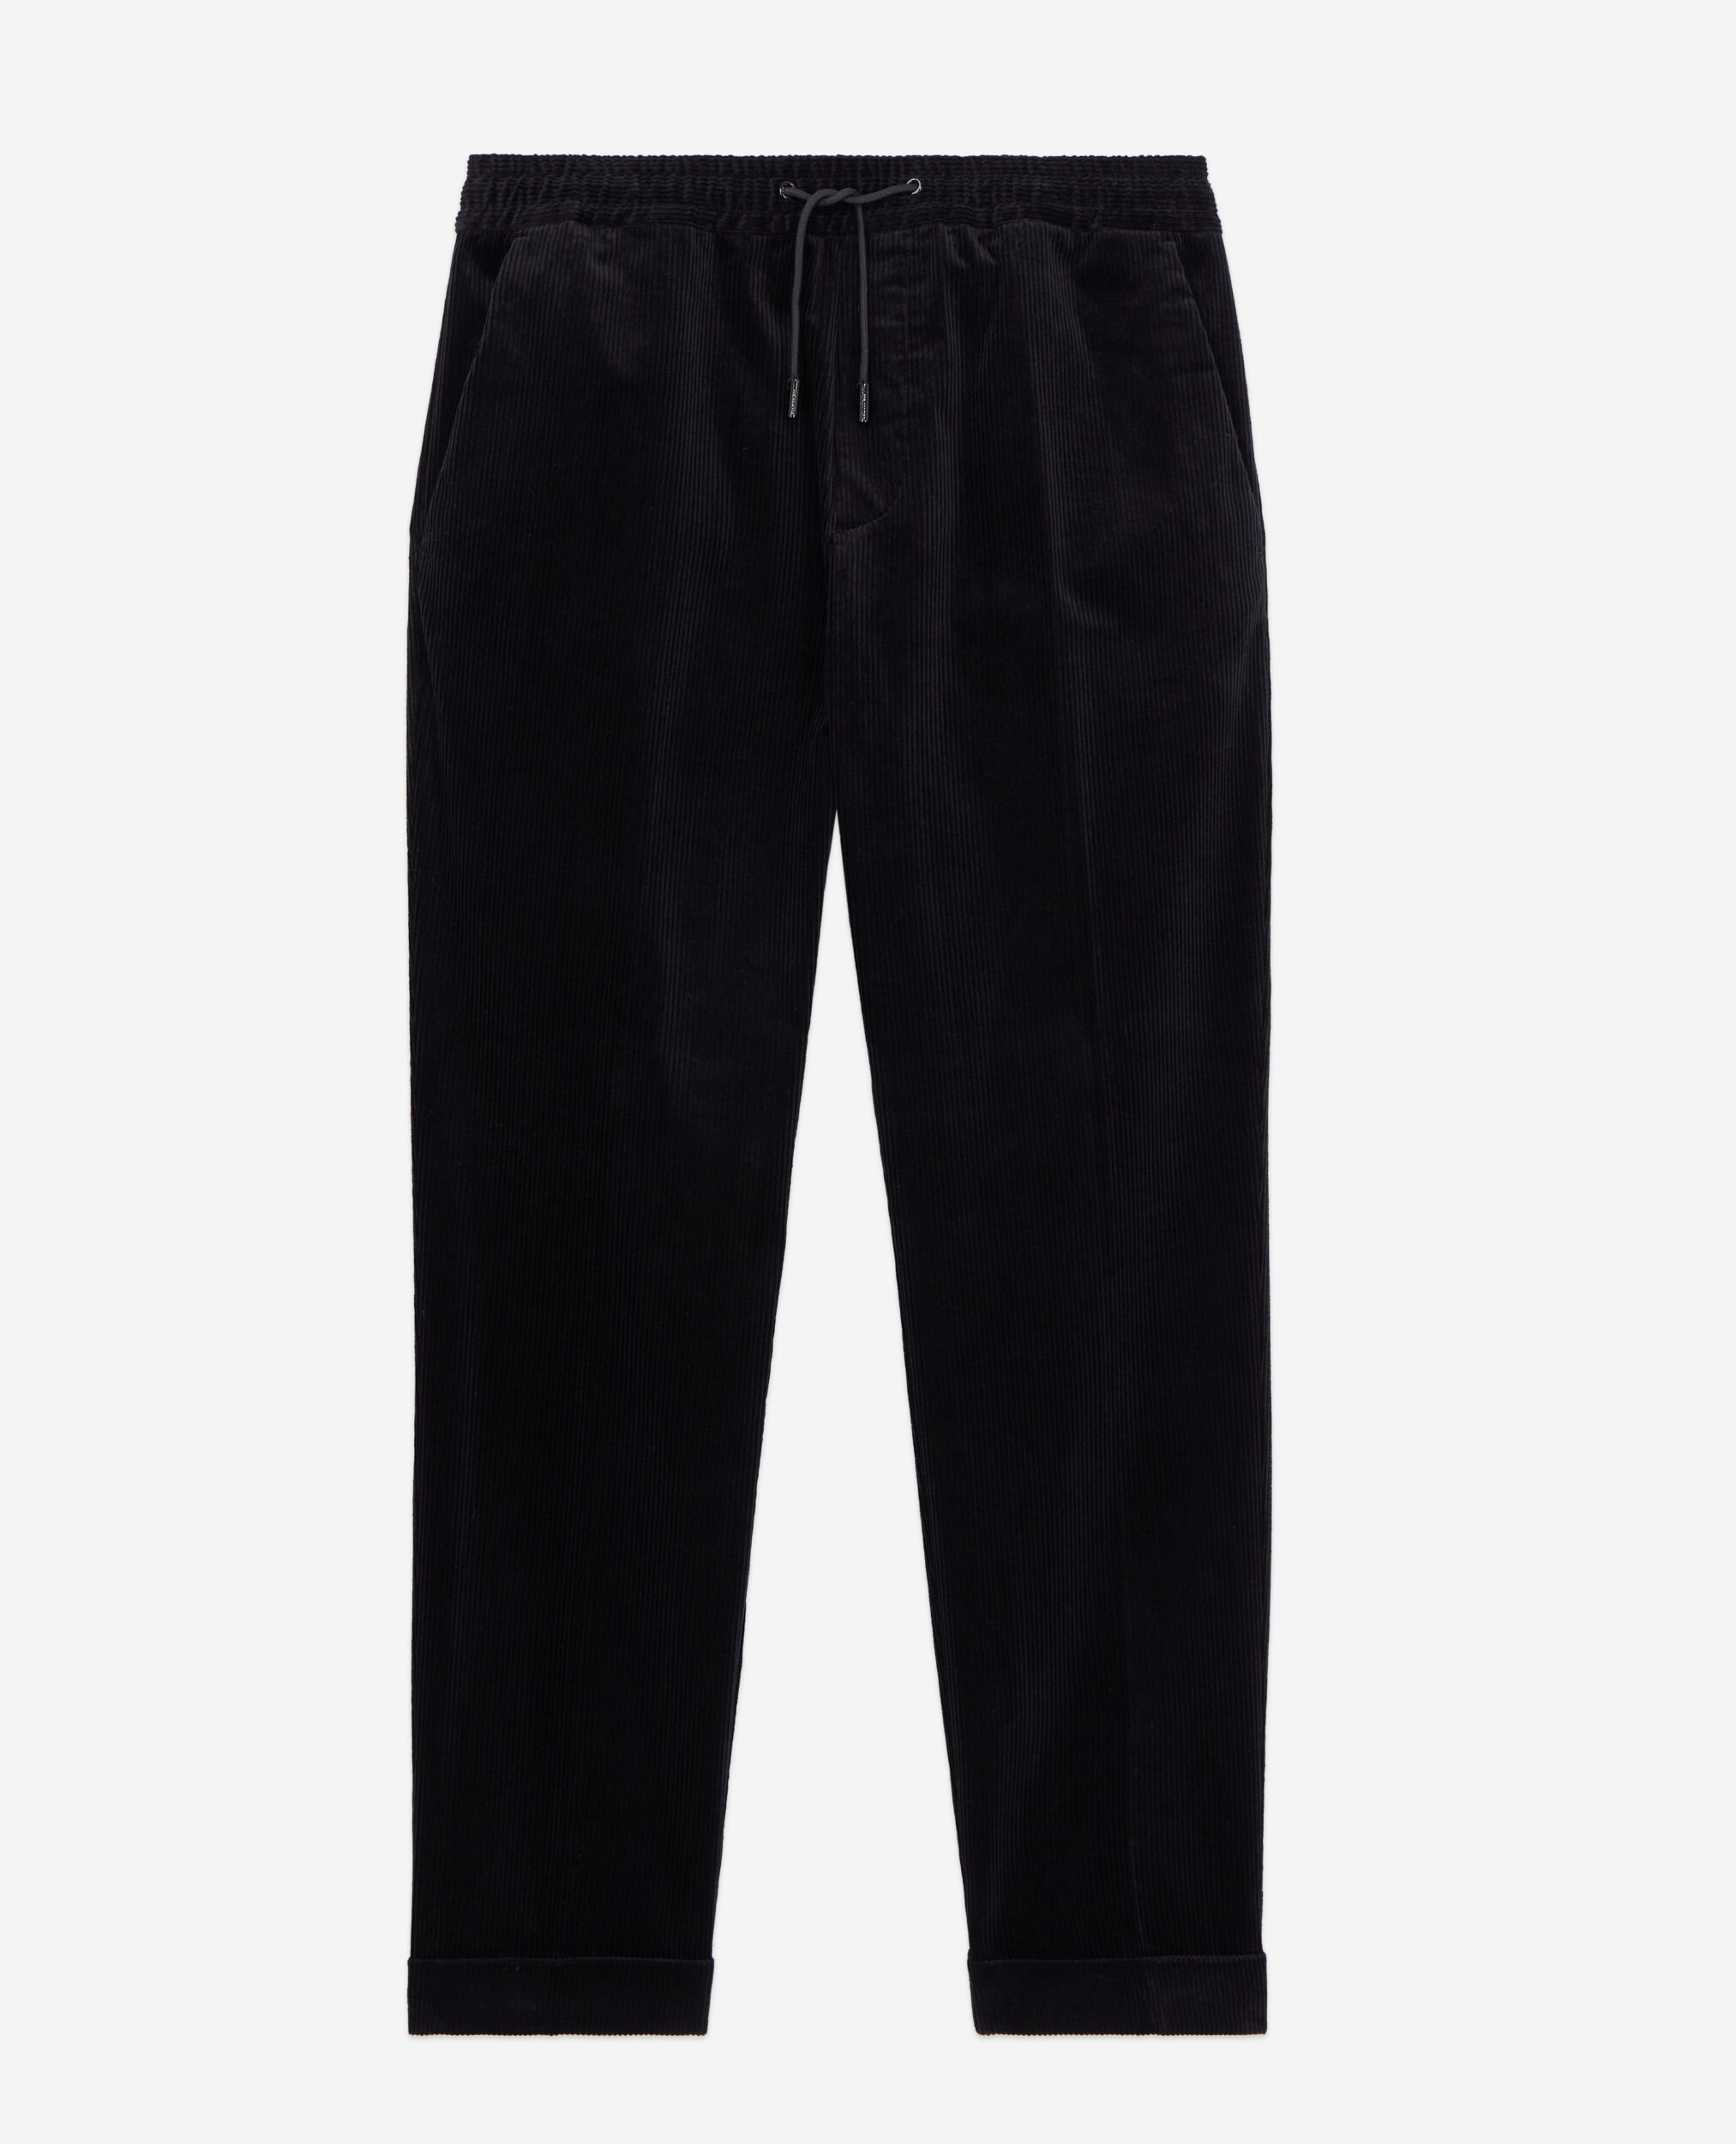 Pantalon noir en velours côtelé, BLACK, hi-res image number null